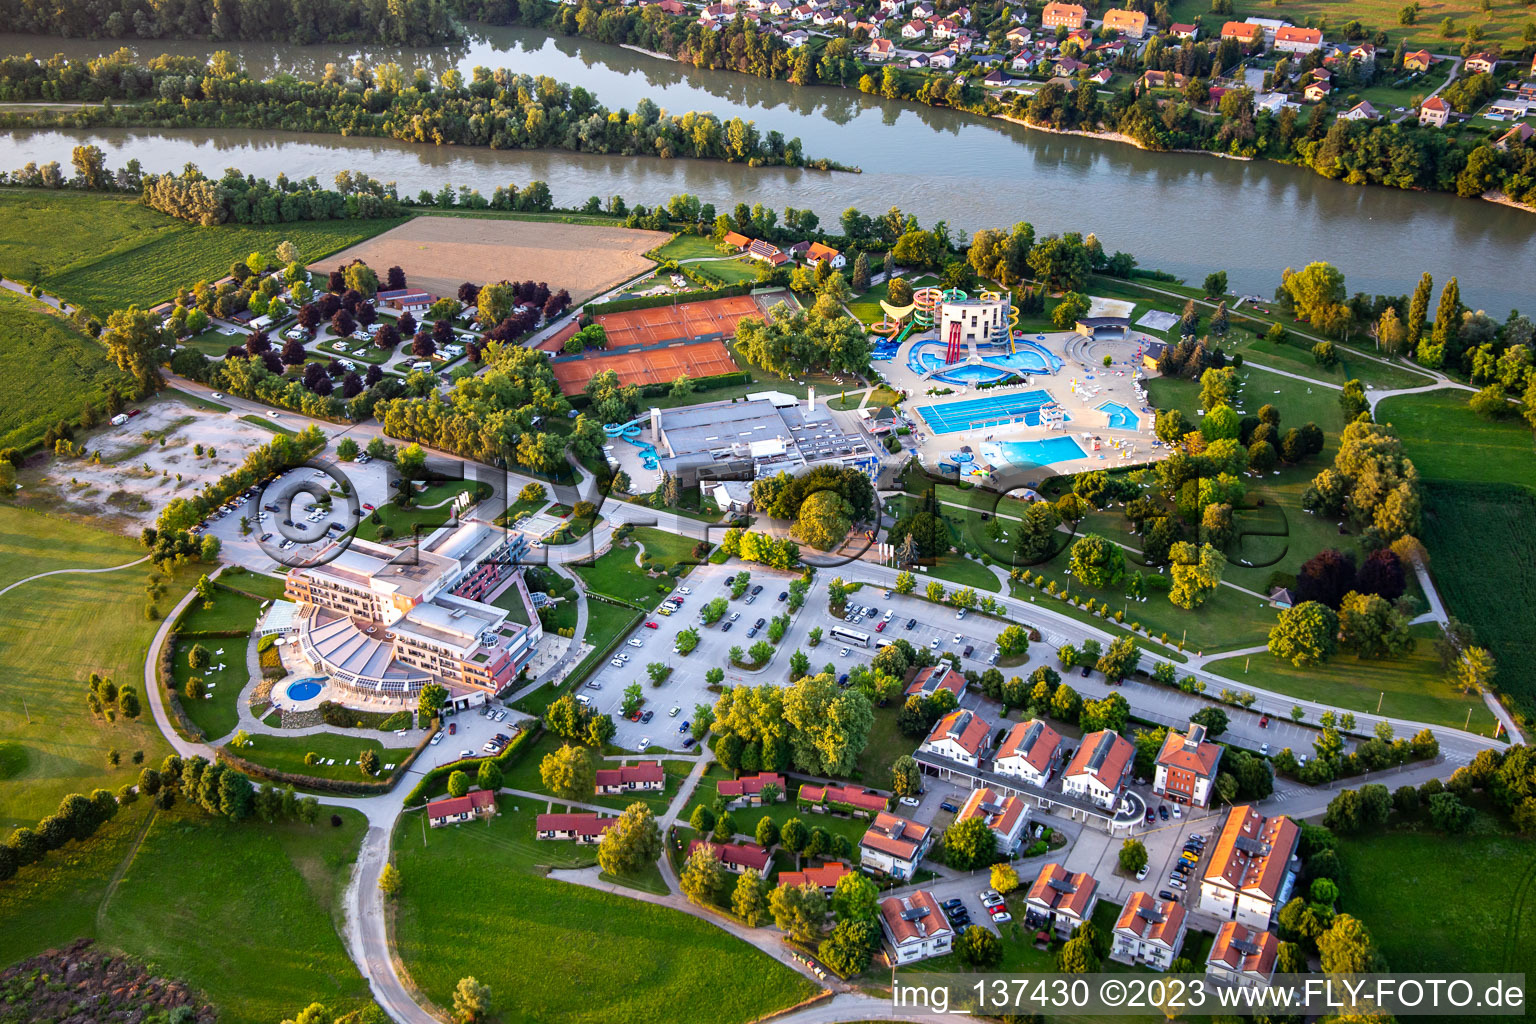 Luftbild von Grand Hotel Primus bei Terme Ptuj - Sava Hotels & Resorts, Slowenien